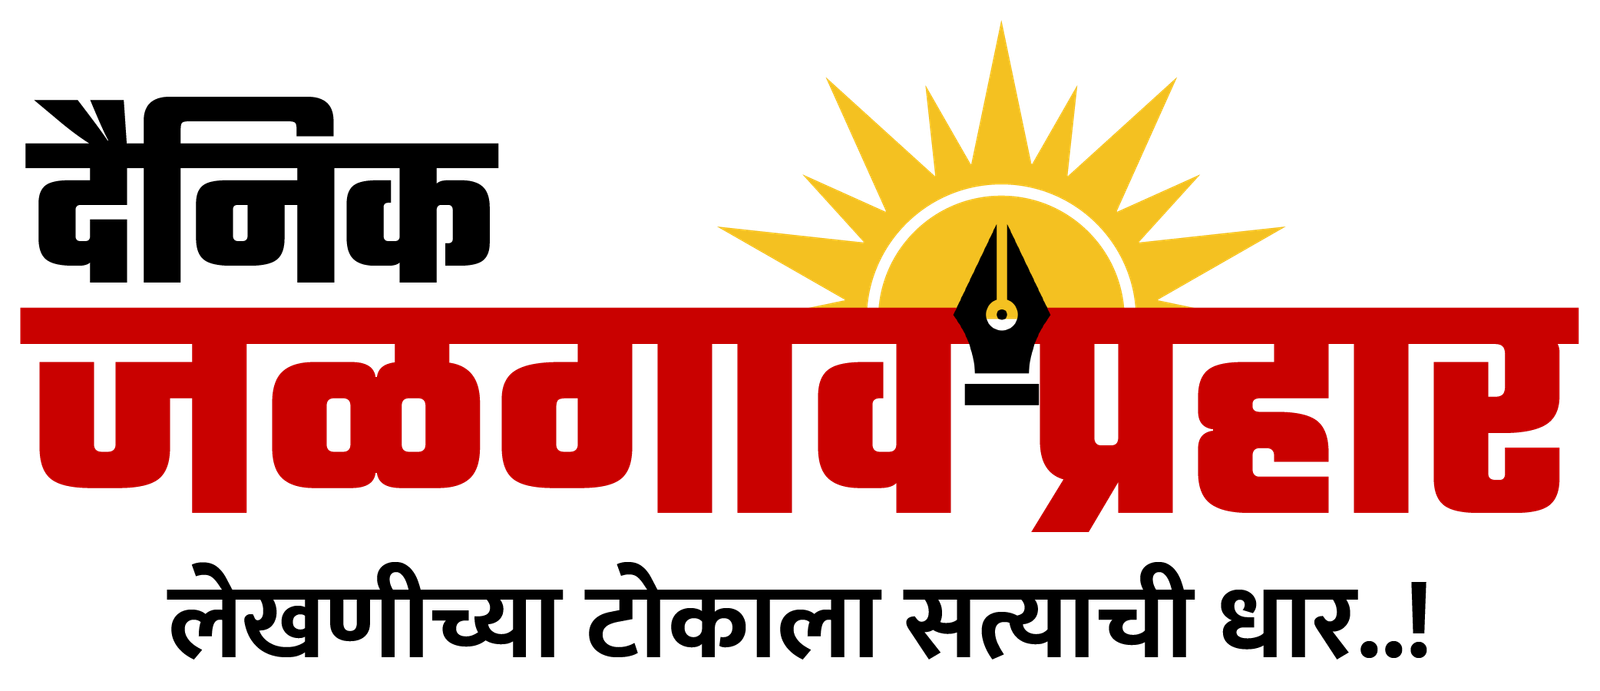 Jalgaonprahar